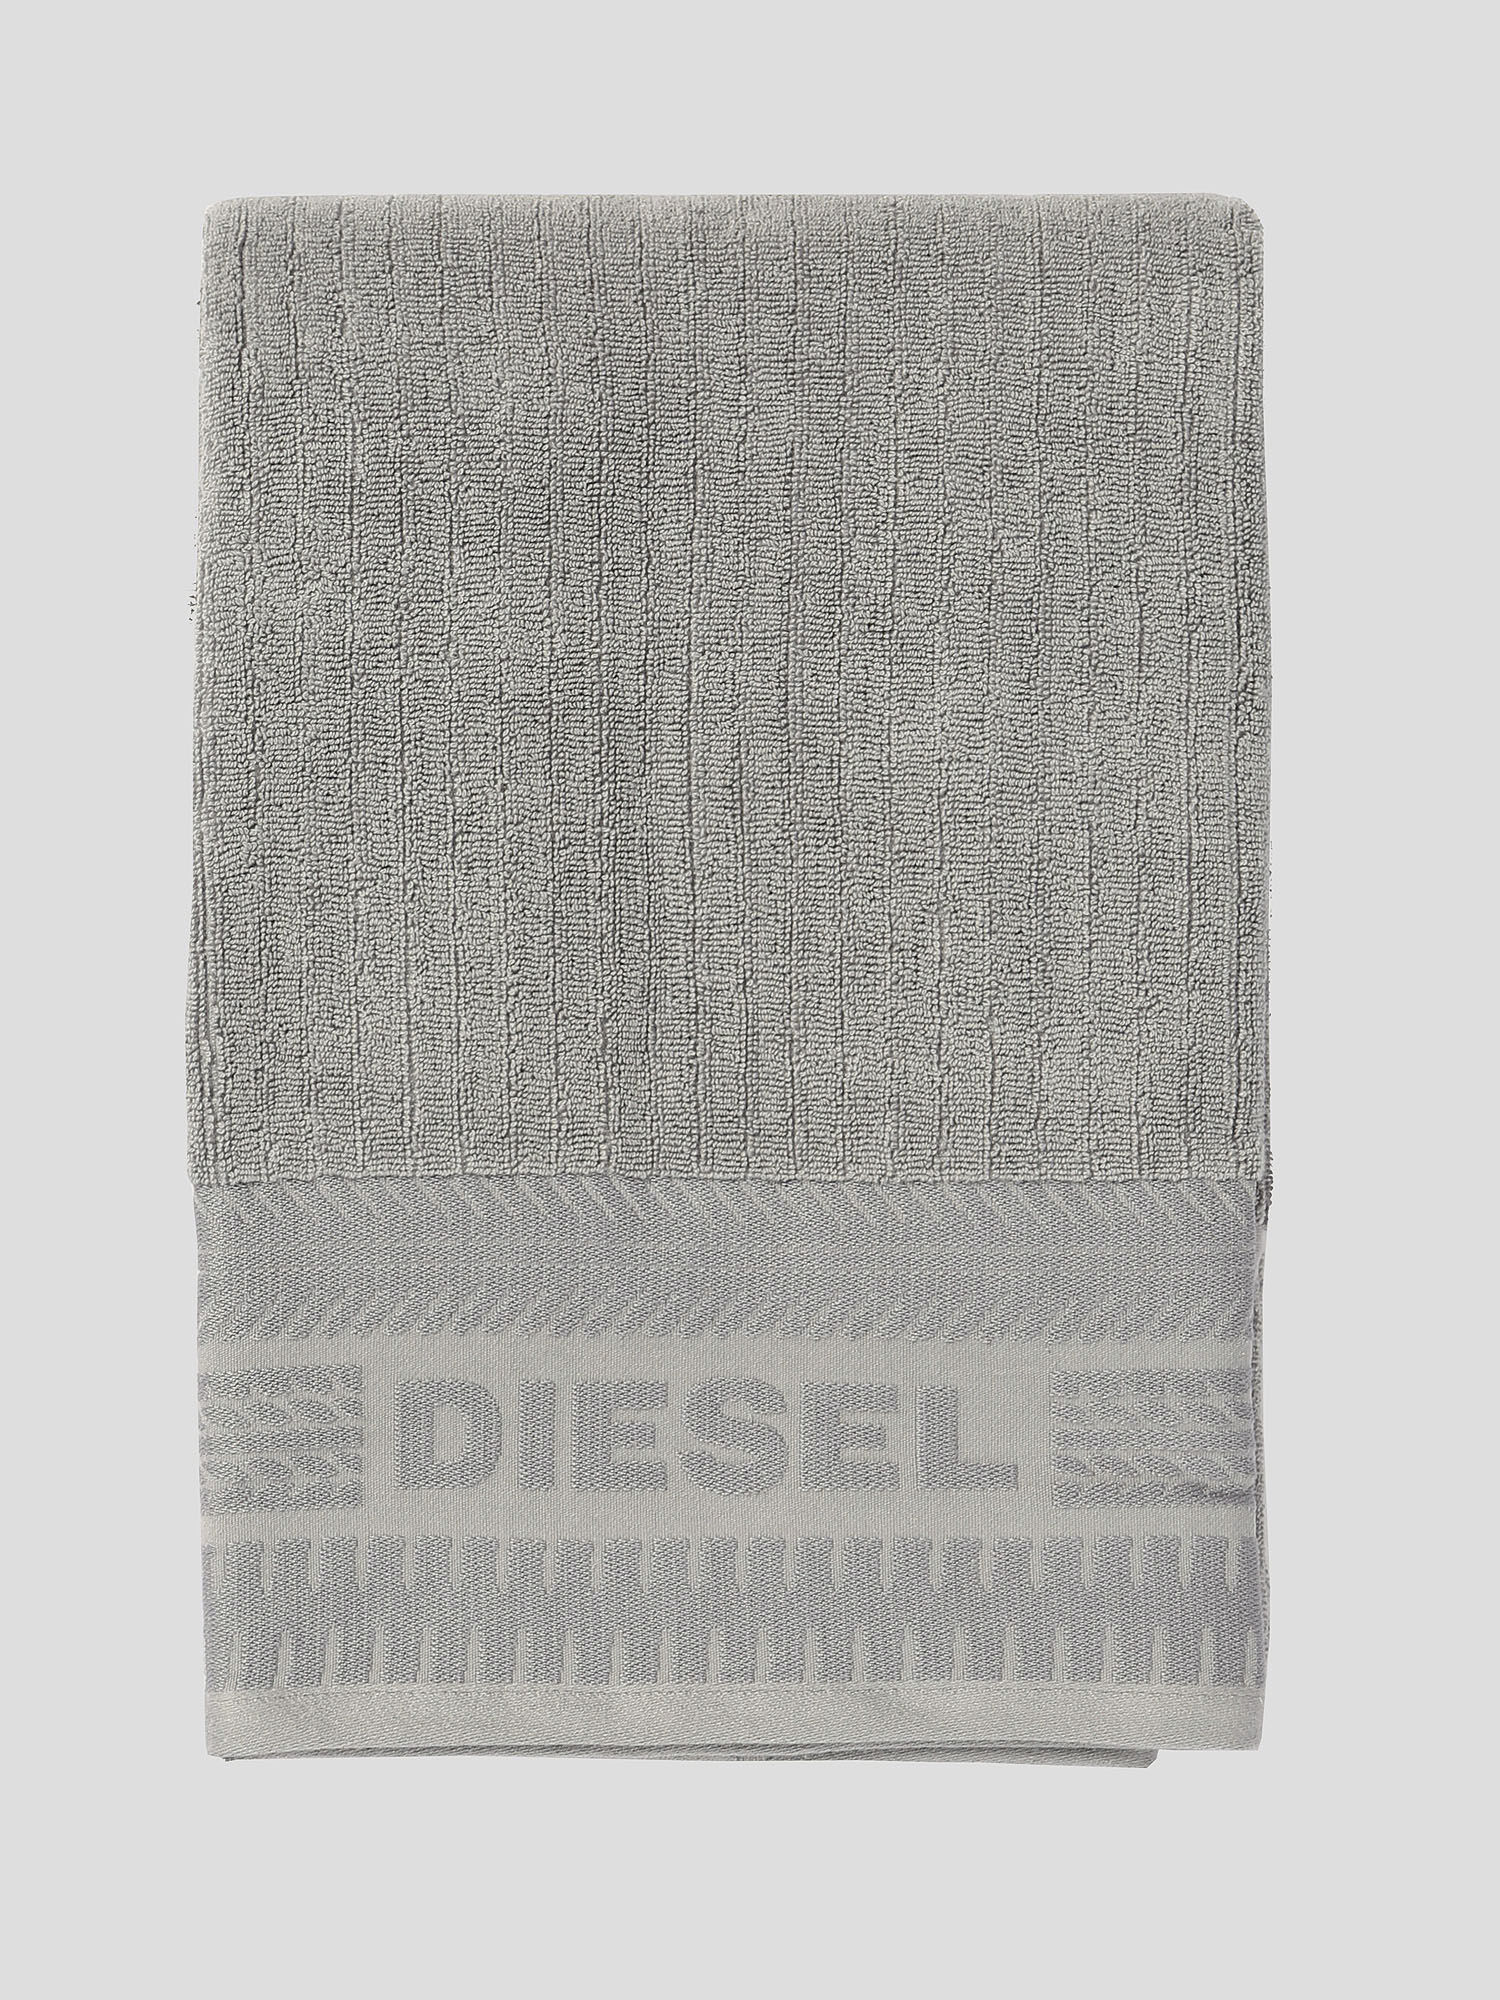 Diesel - 72332 SOLID, Grey - Image 1